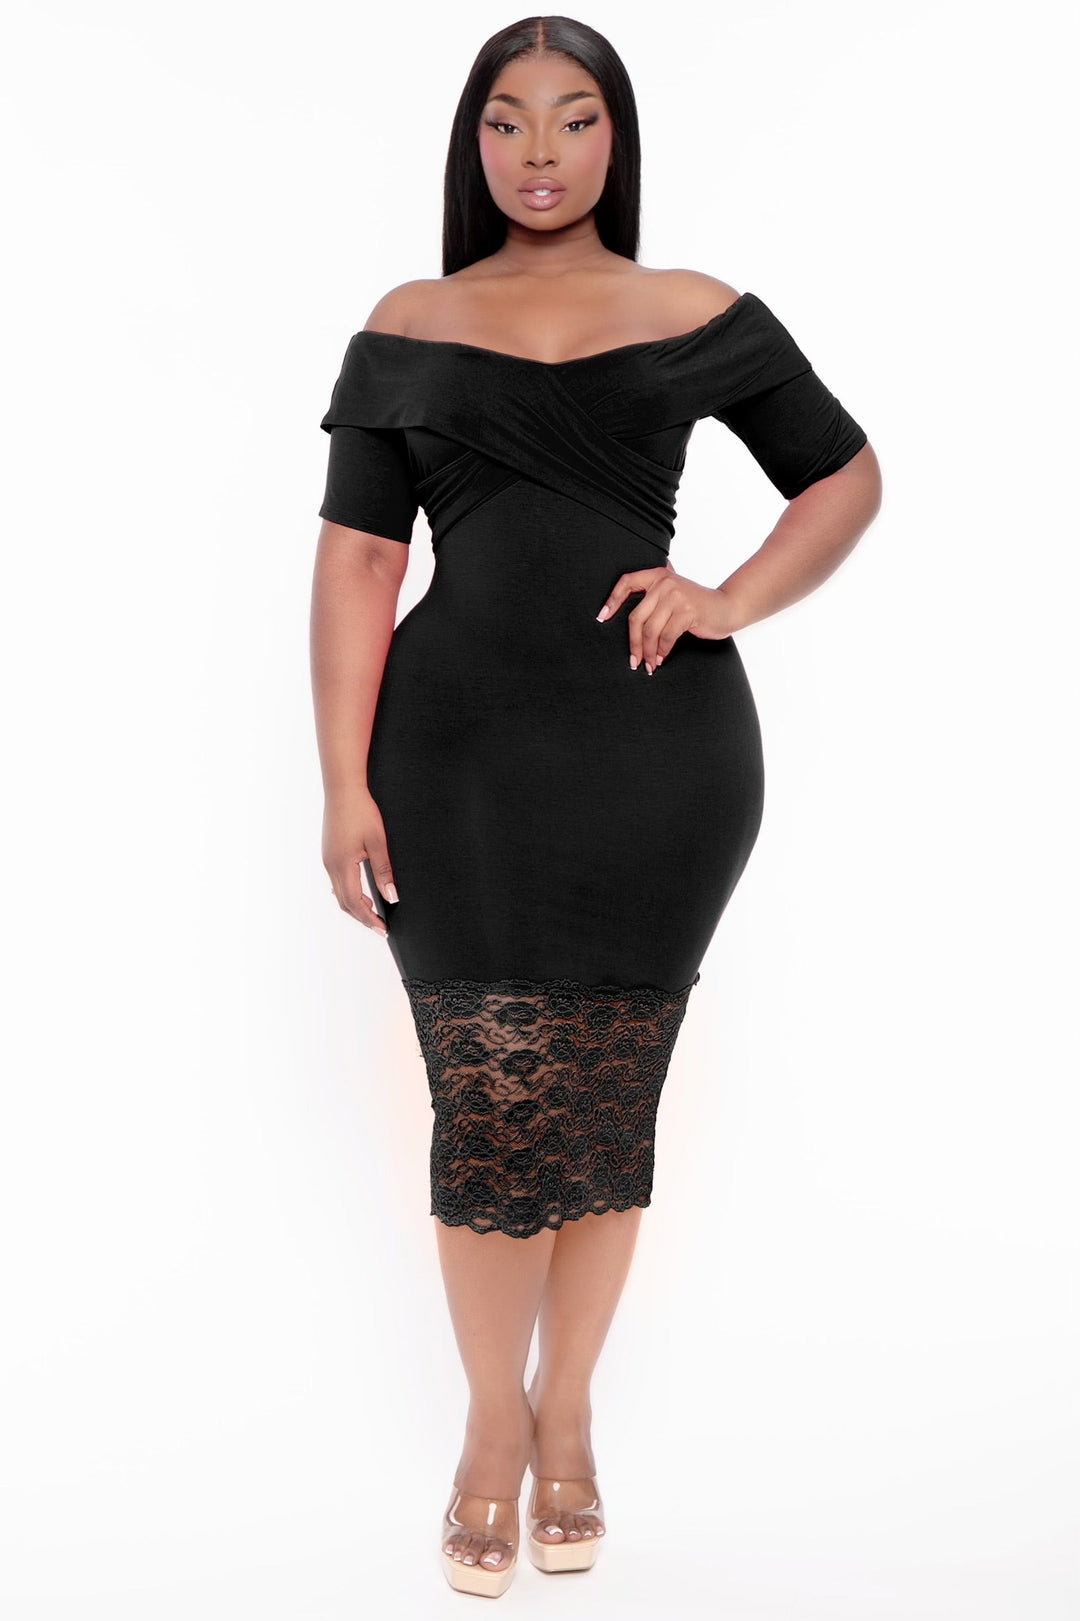 Plus Size Mamacita Fringe Dress - Black